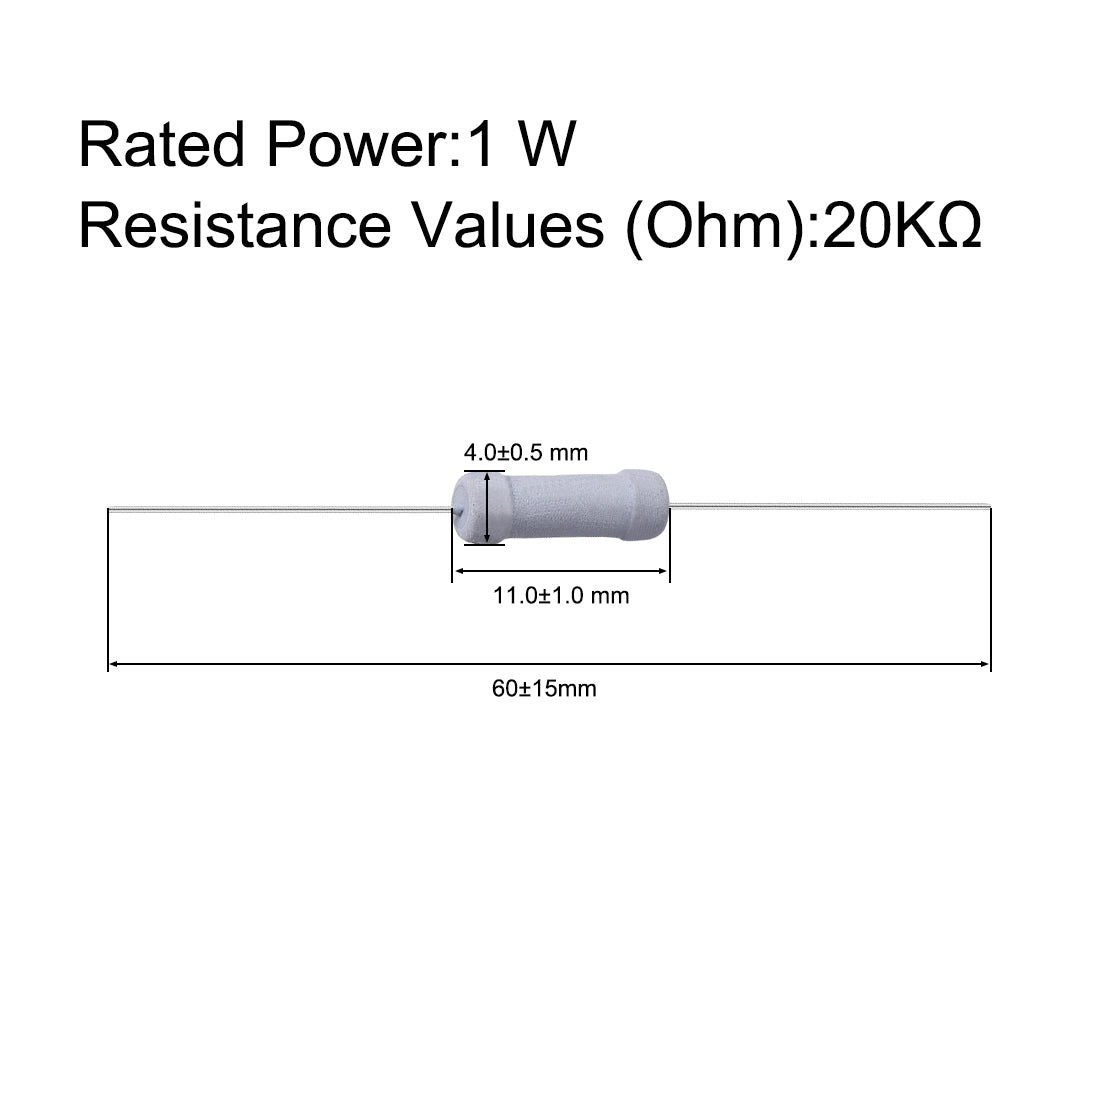 uxcell Uxcell 100 Pcs 1W 1 Watt Metal Oxide Film Resistor Axile Lead 20K Ohm ±5% Tolerance